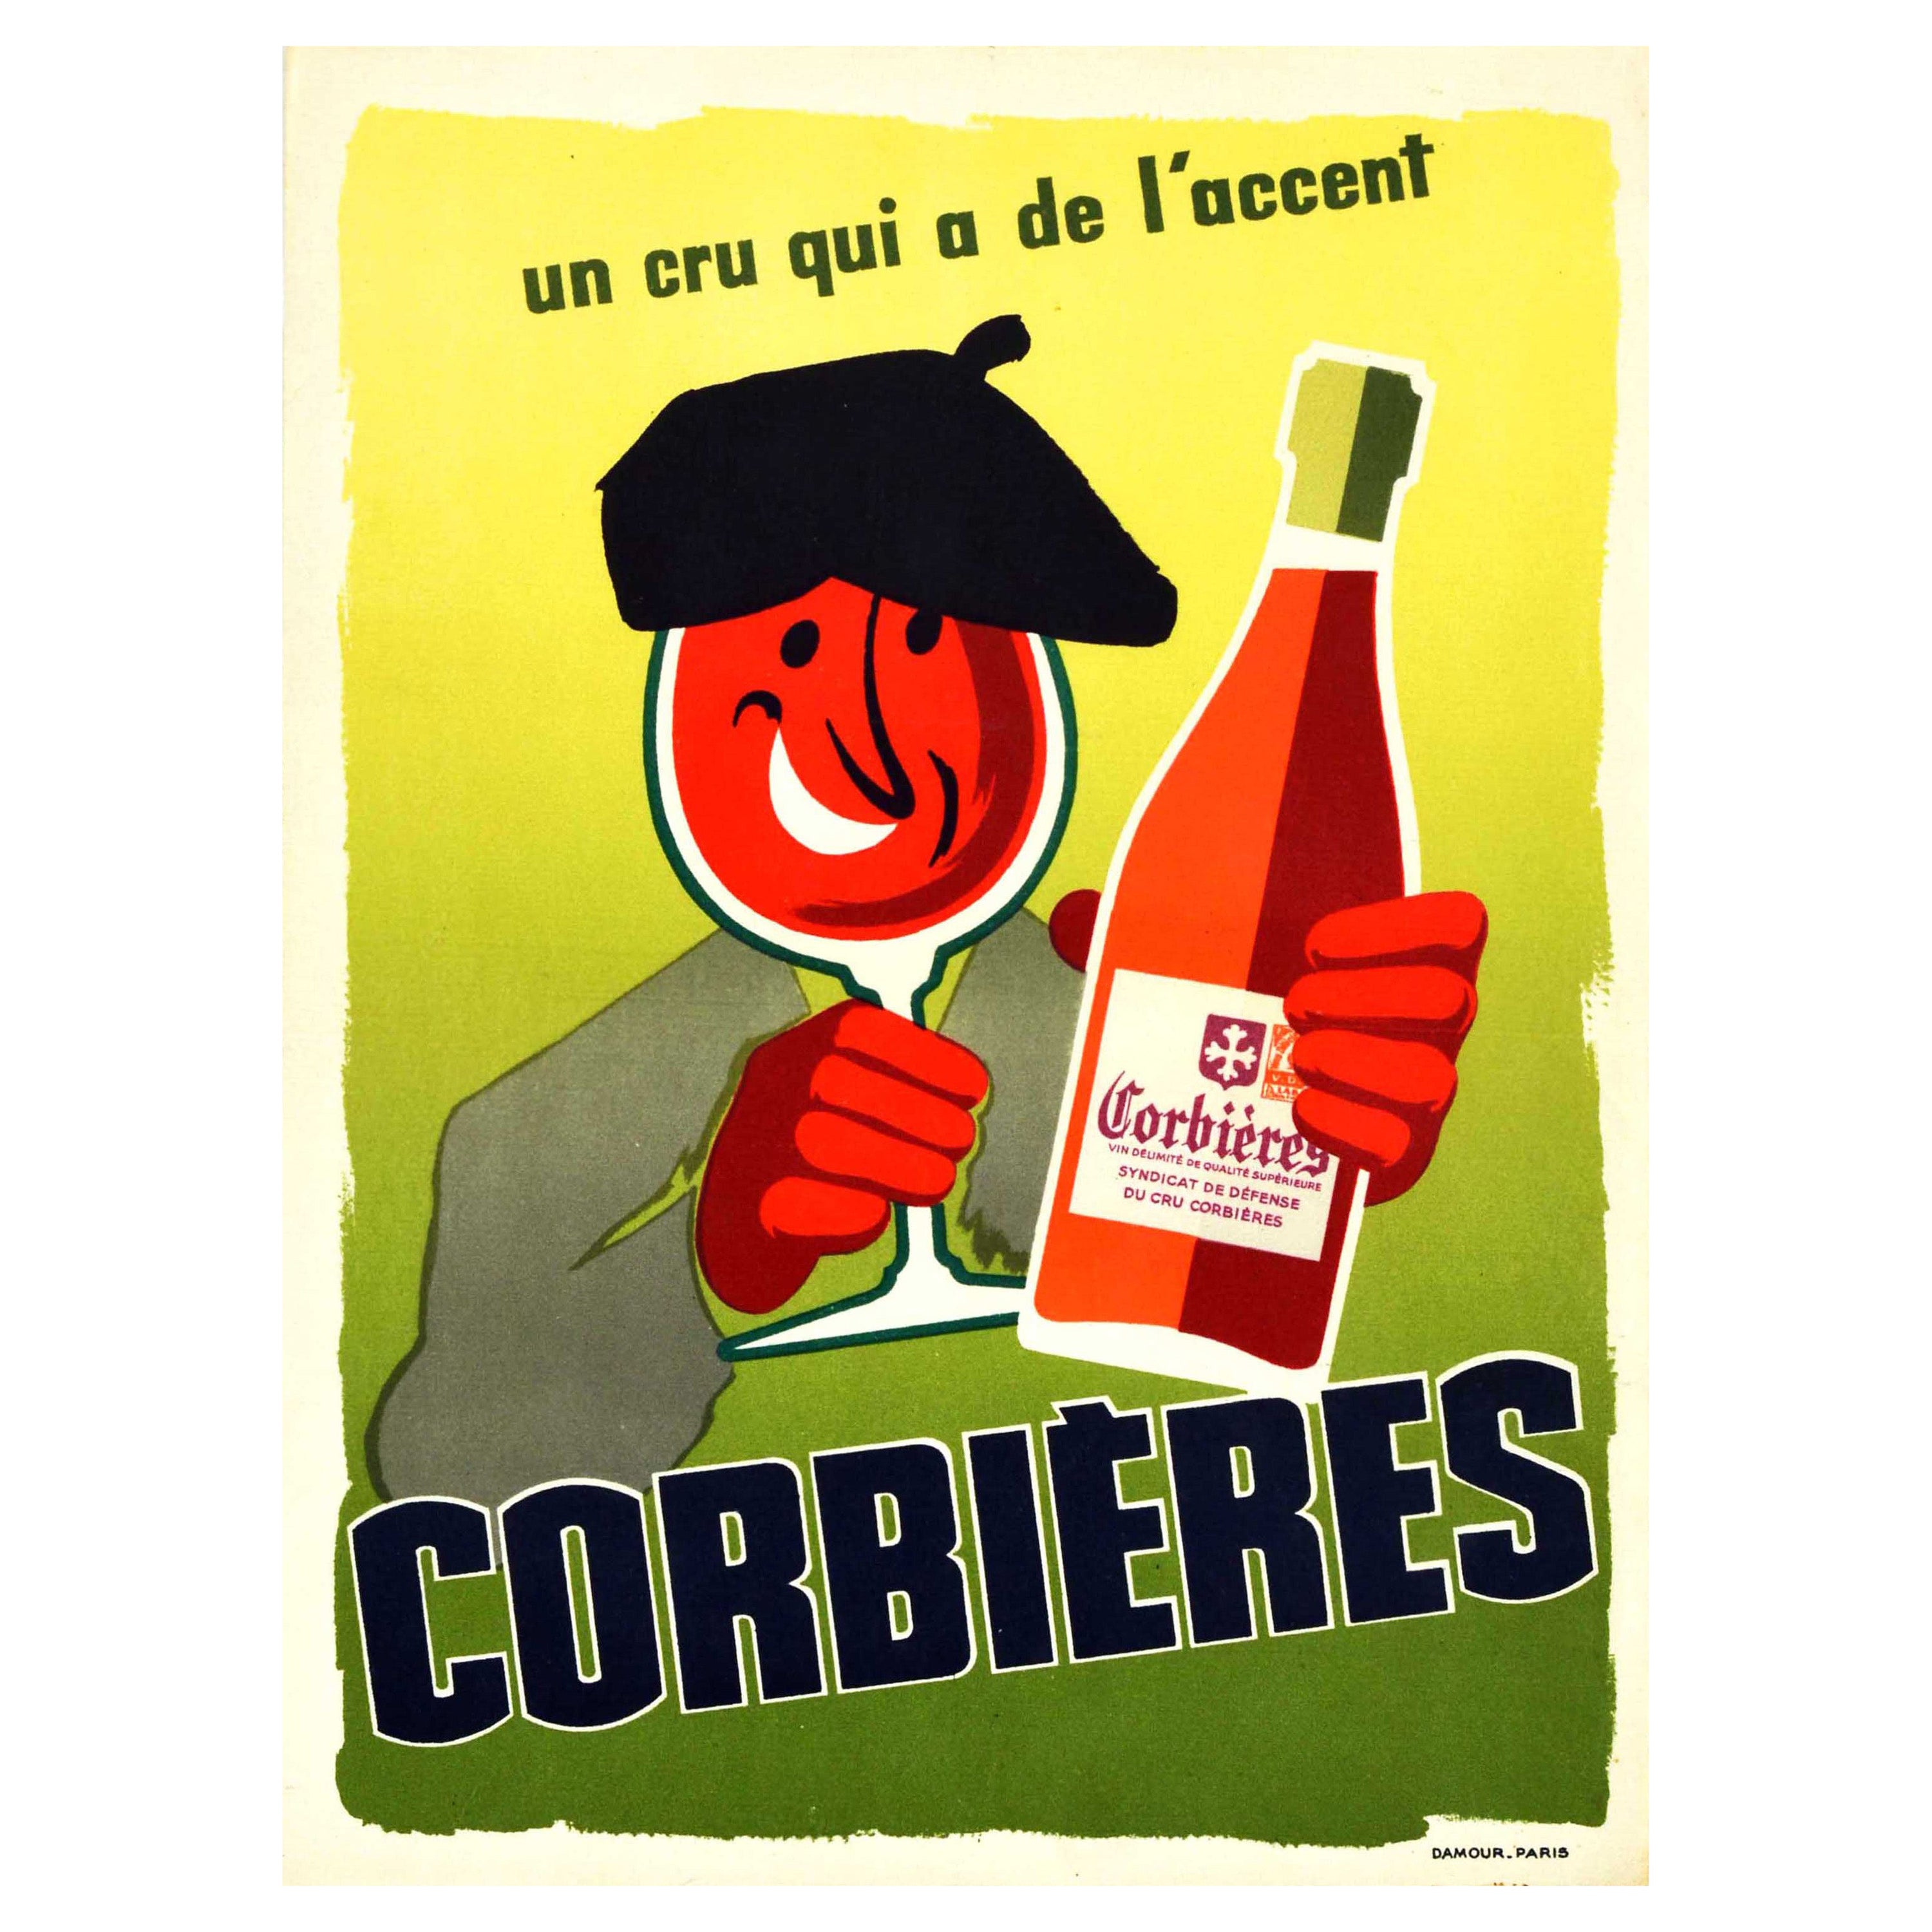 Original-Vintage-Getränkeplakat Corbieres AOC Wein Frankreich Languedoc Roussillon, Languedoc